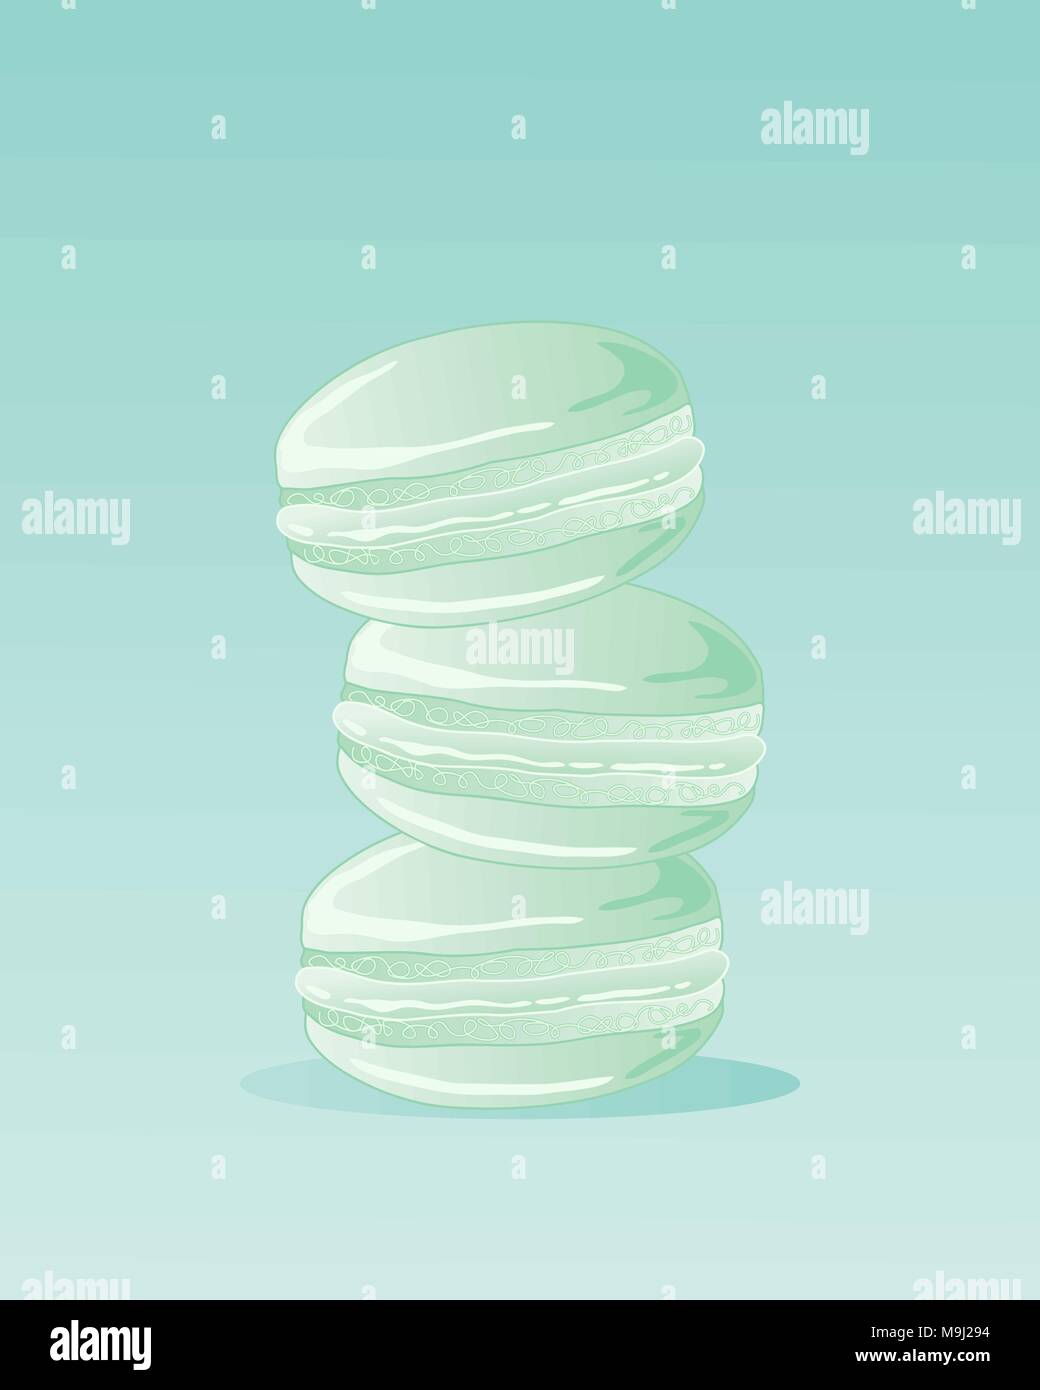 Une illustration de trois macarons à la menthe dans une pile sur un arrière-plan couleur menthe à l'espace réservé au texte Illustration de Vecteur